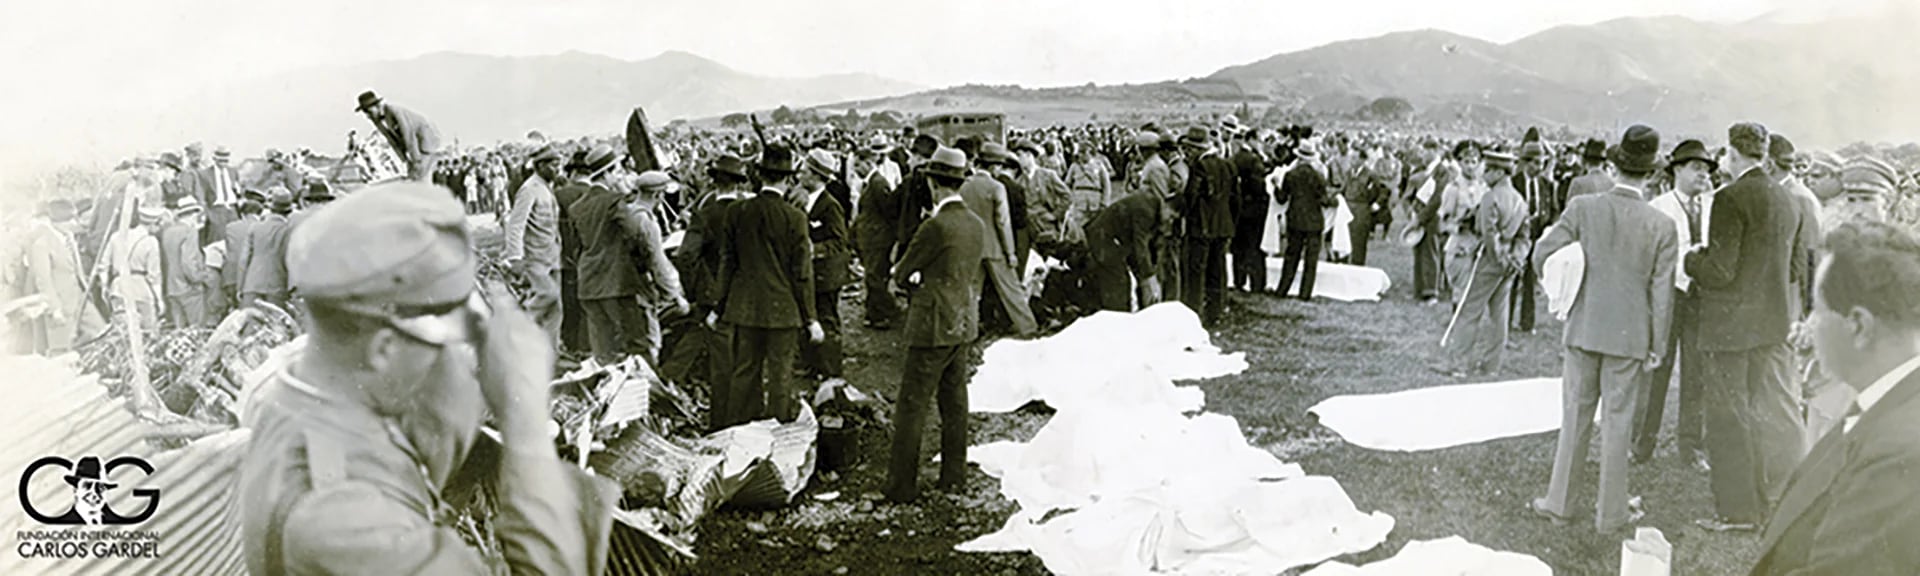 El 24 de junio de 1935, el avión que trasportaba a Carlos Gardel se estrelló y el cantor murió. También perdieron la vida Alfredo Le Pera y los músicos que lo acompañaban. 